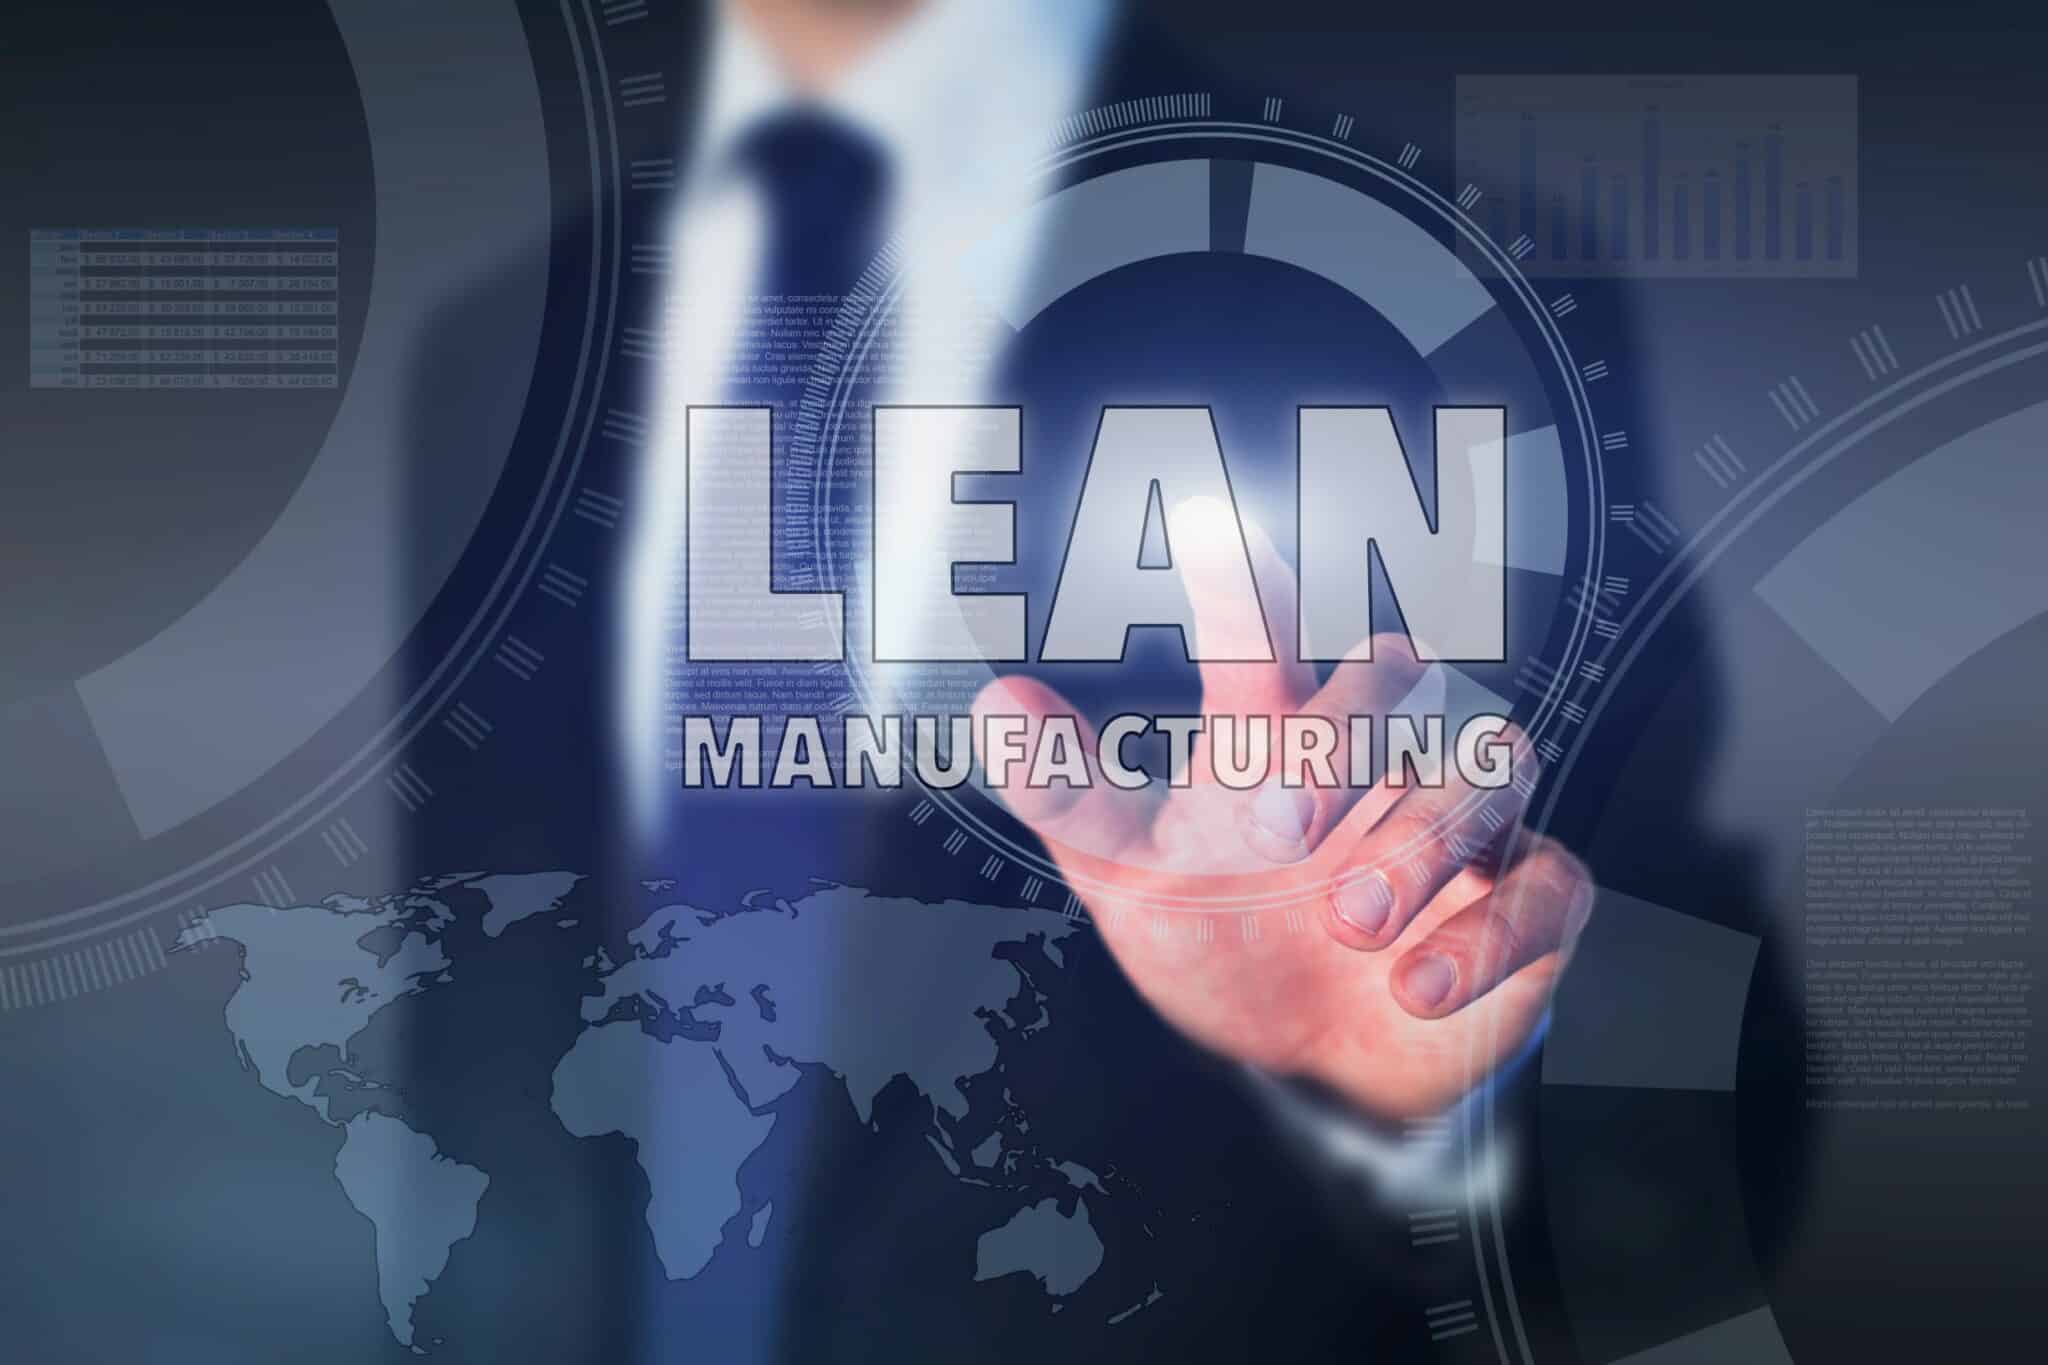 Lean Manufacturing Quest Ce Que Le Lean Manufacturing 2015